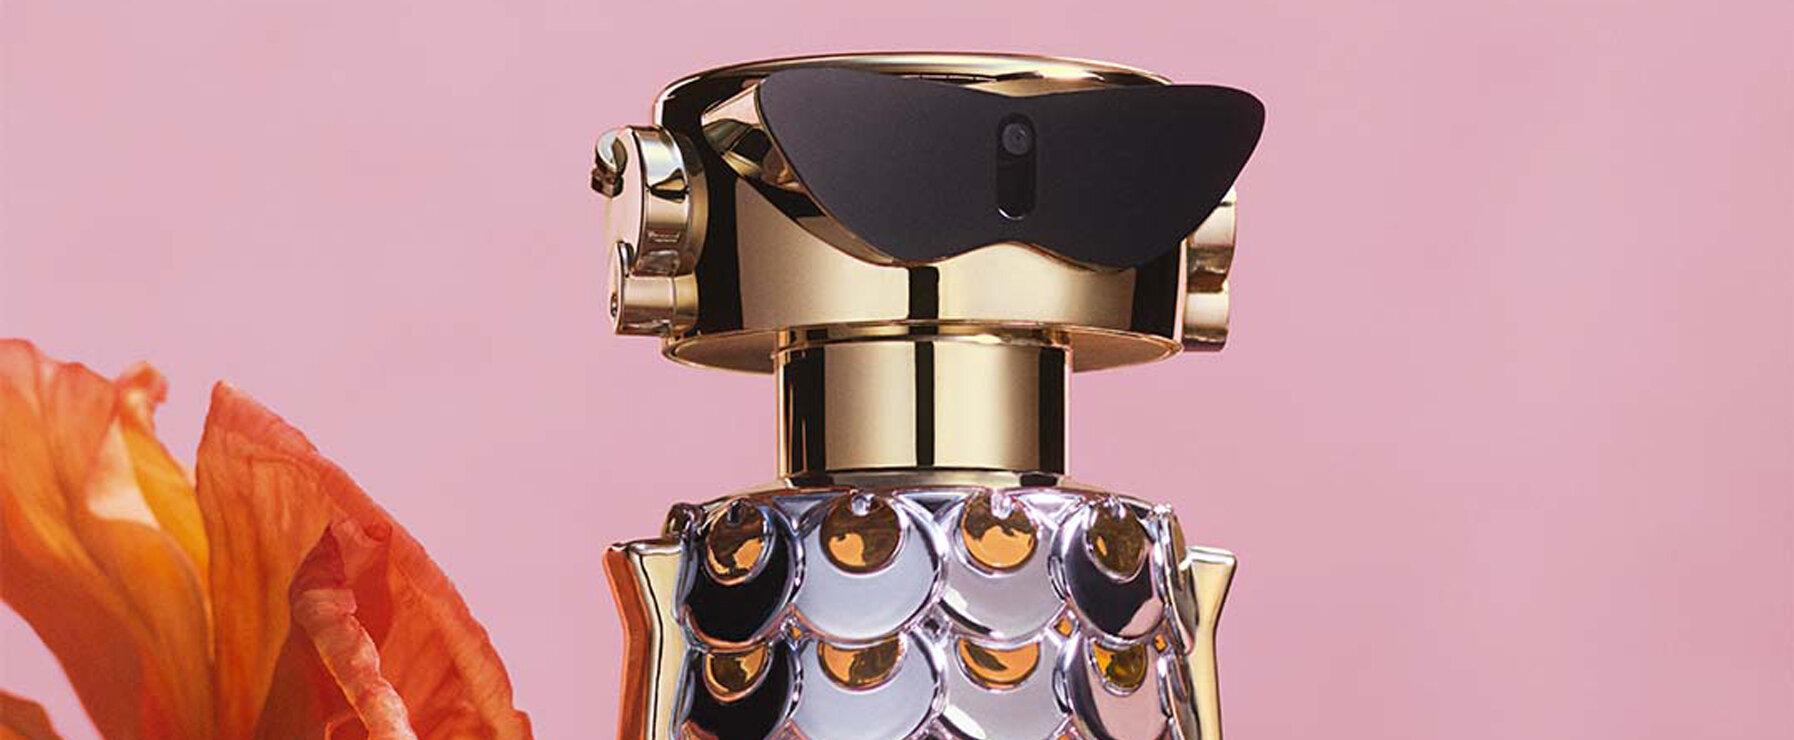 „Fame“ - Paco Rabanne stellt neues Parfum vor